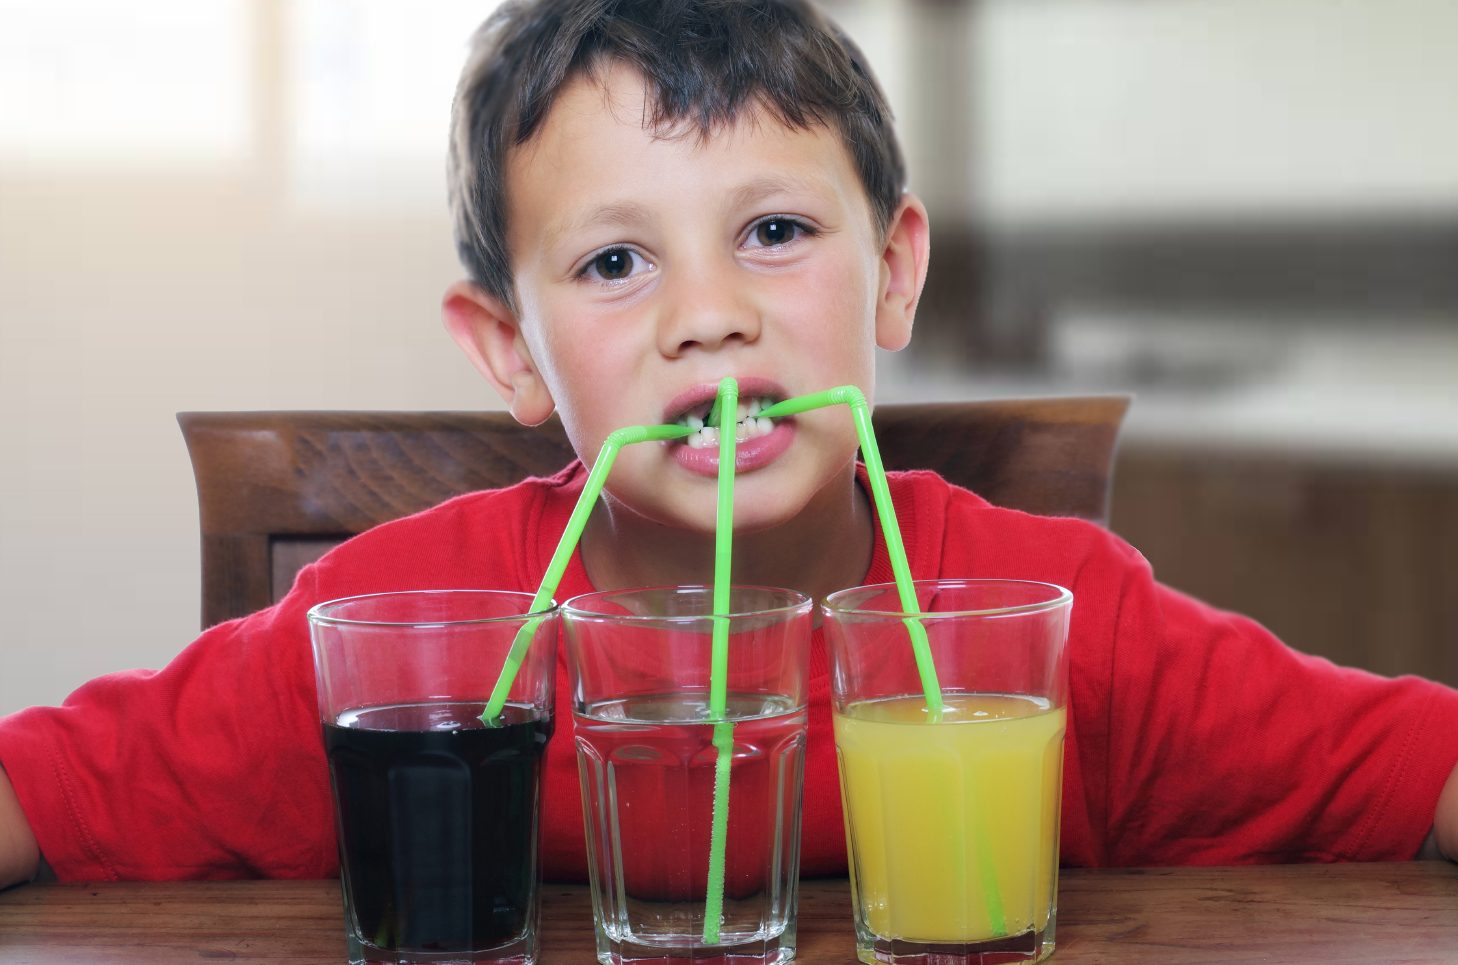 دراسة عن تأثير المشروبات الغازية على قدرات الطفل الذهنية